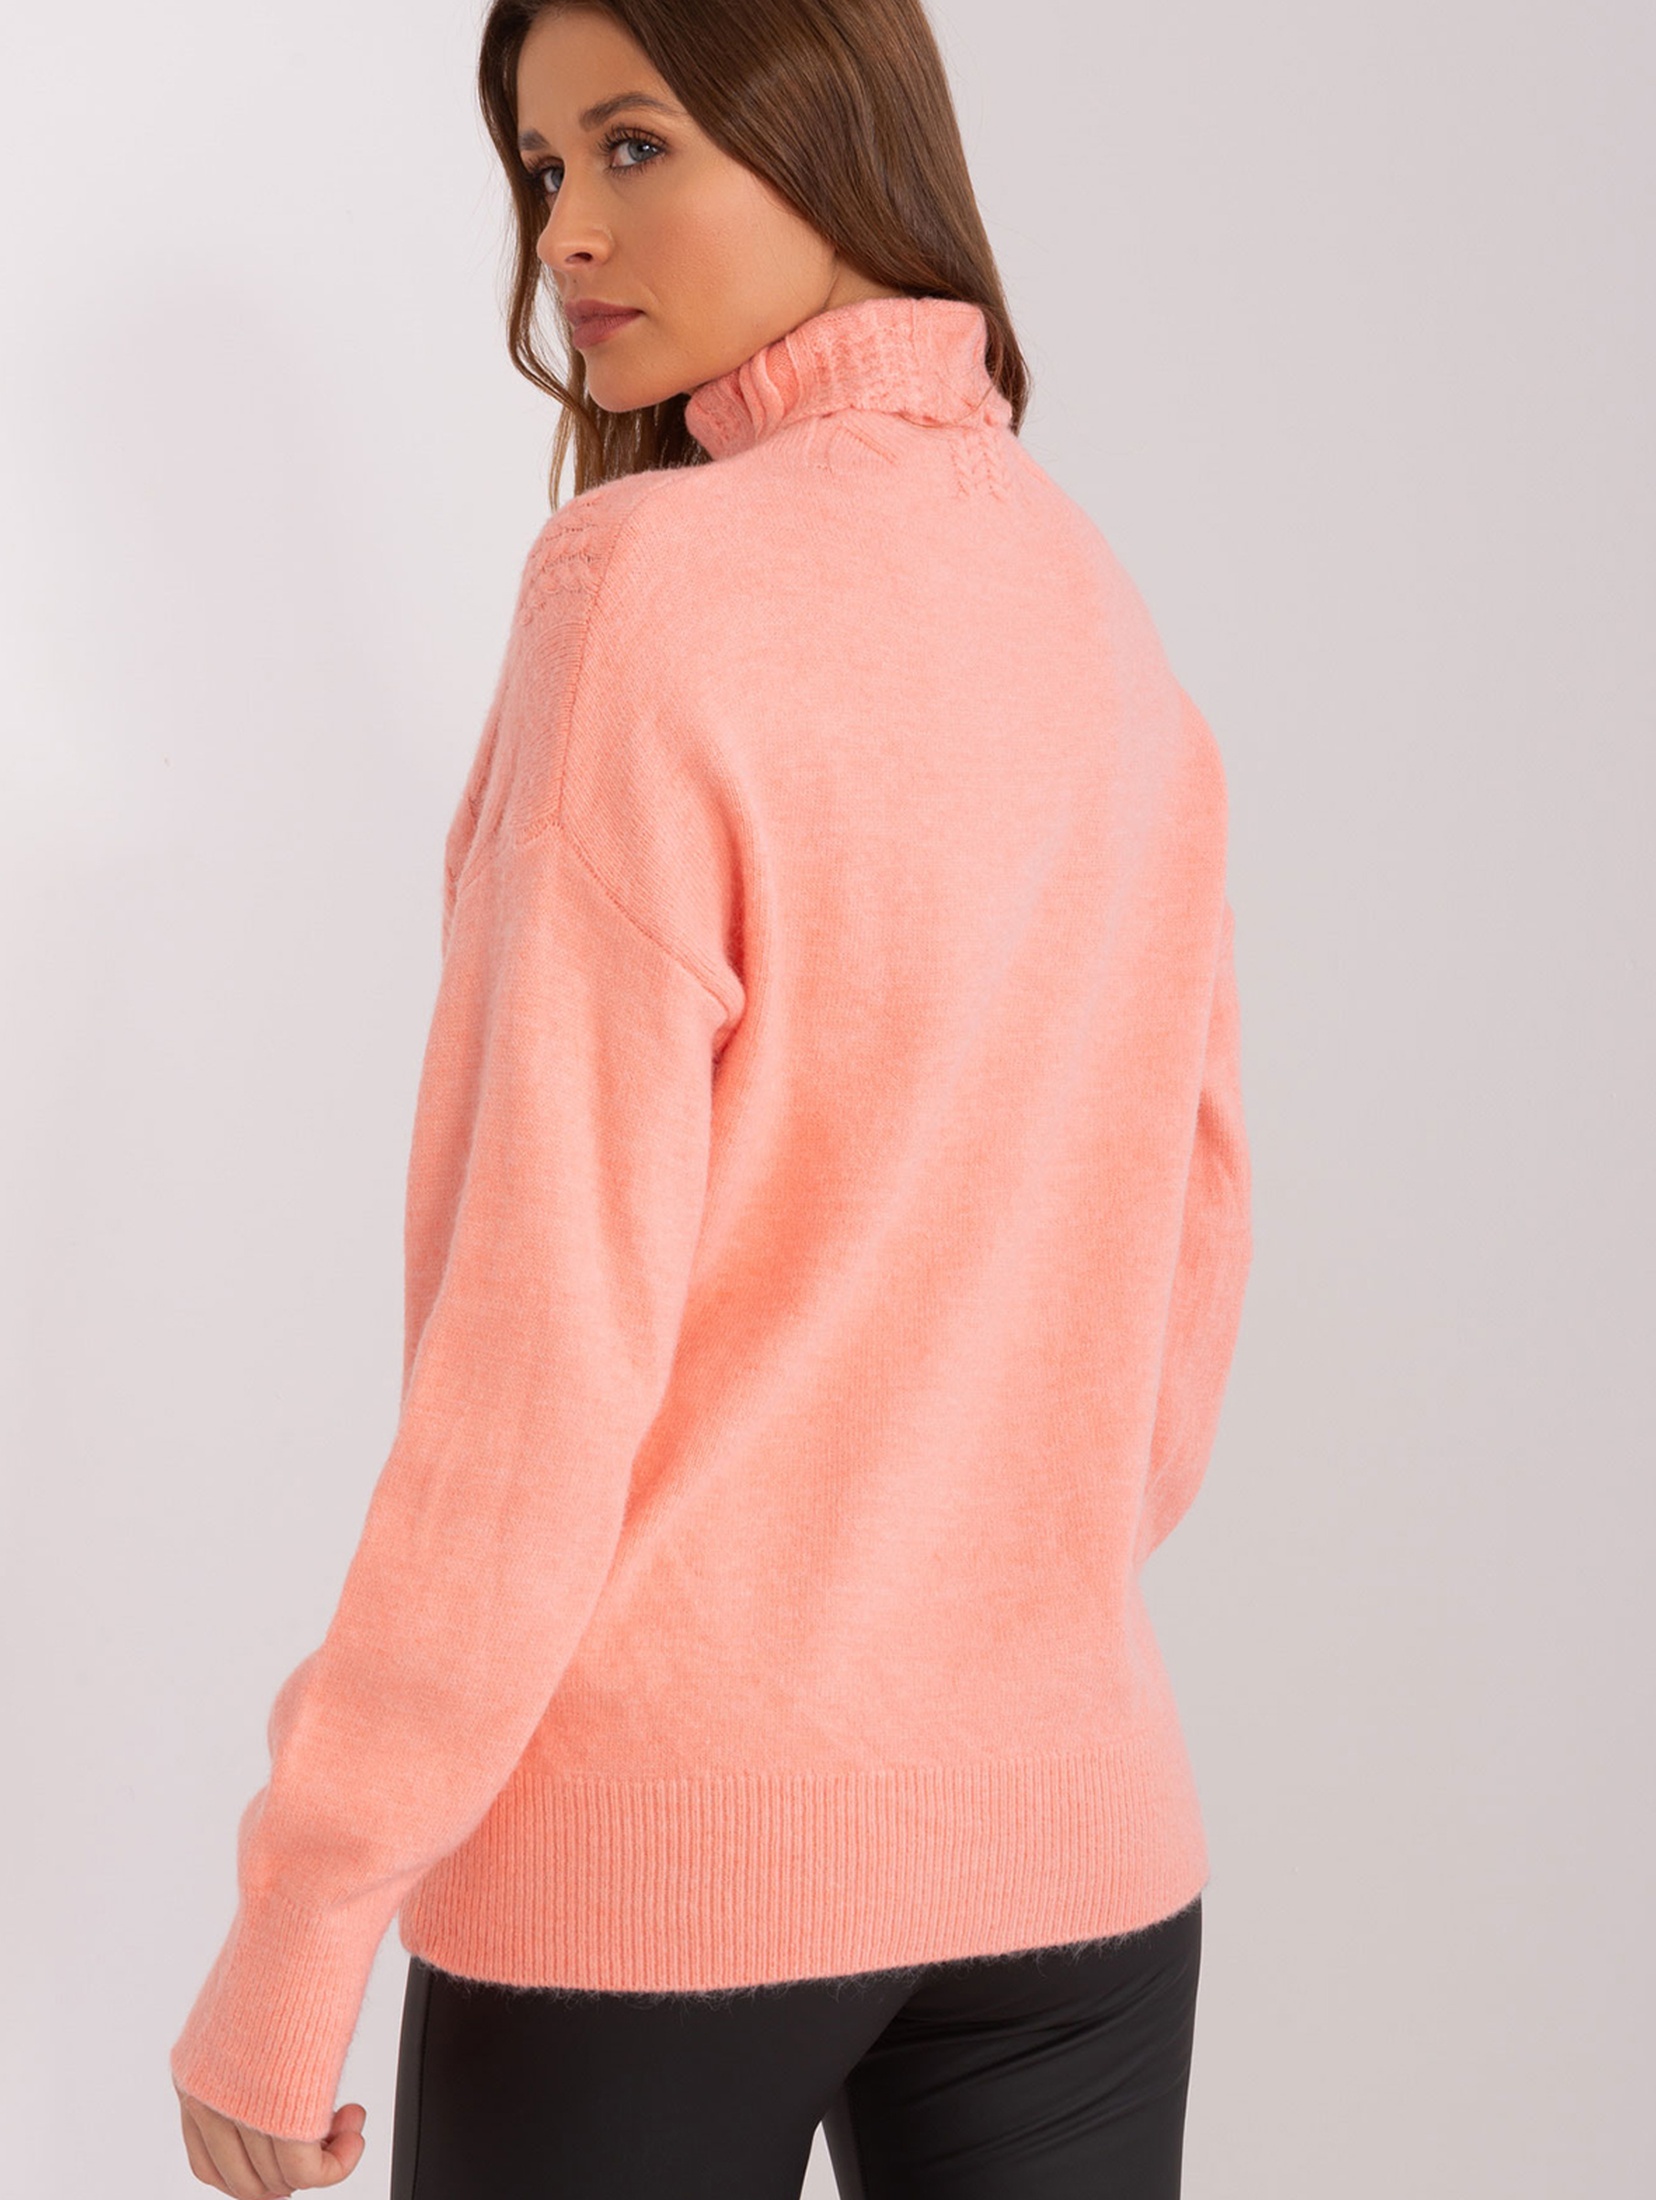 Damski sweter z golfem brzoskwiniowy